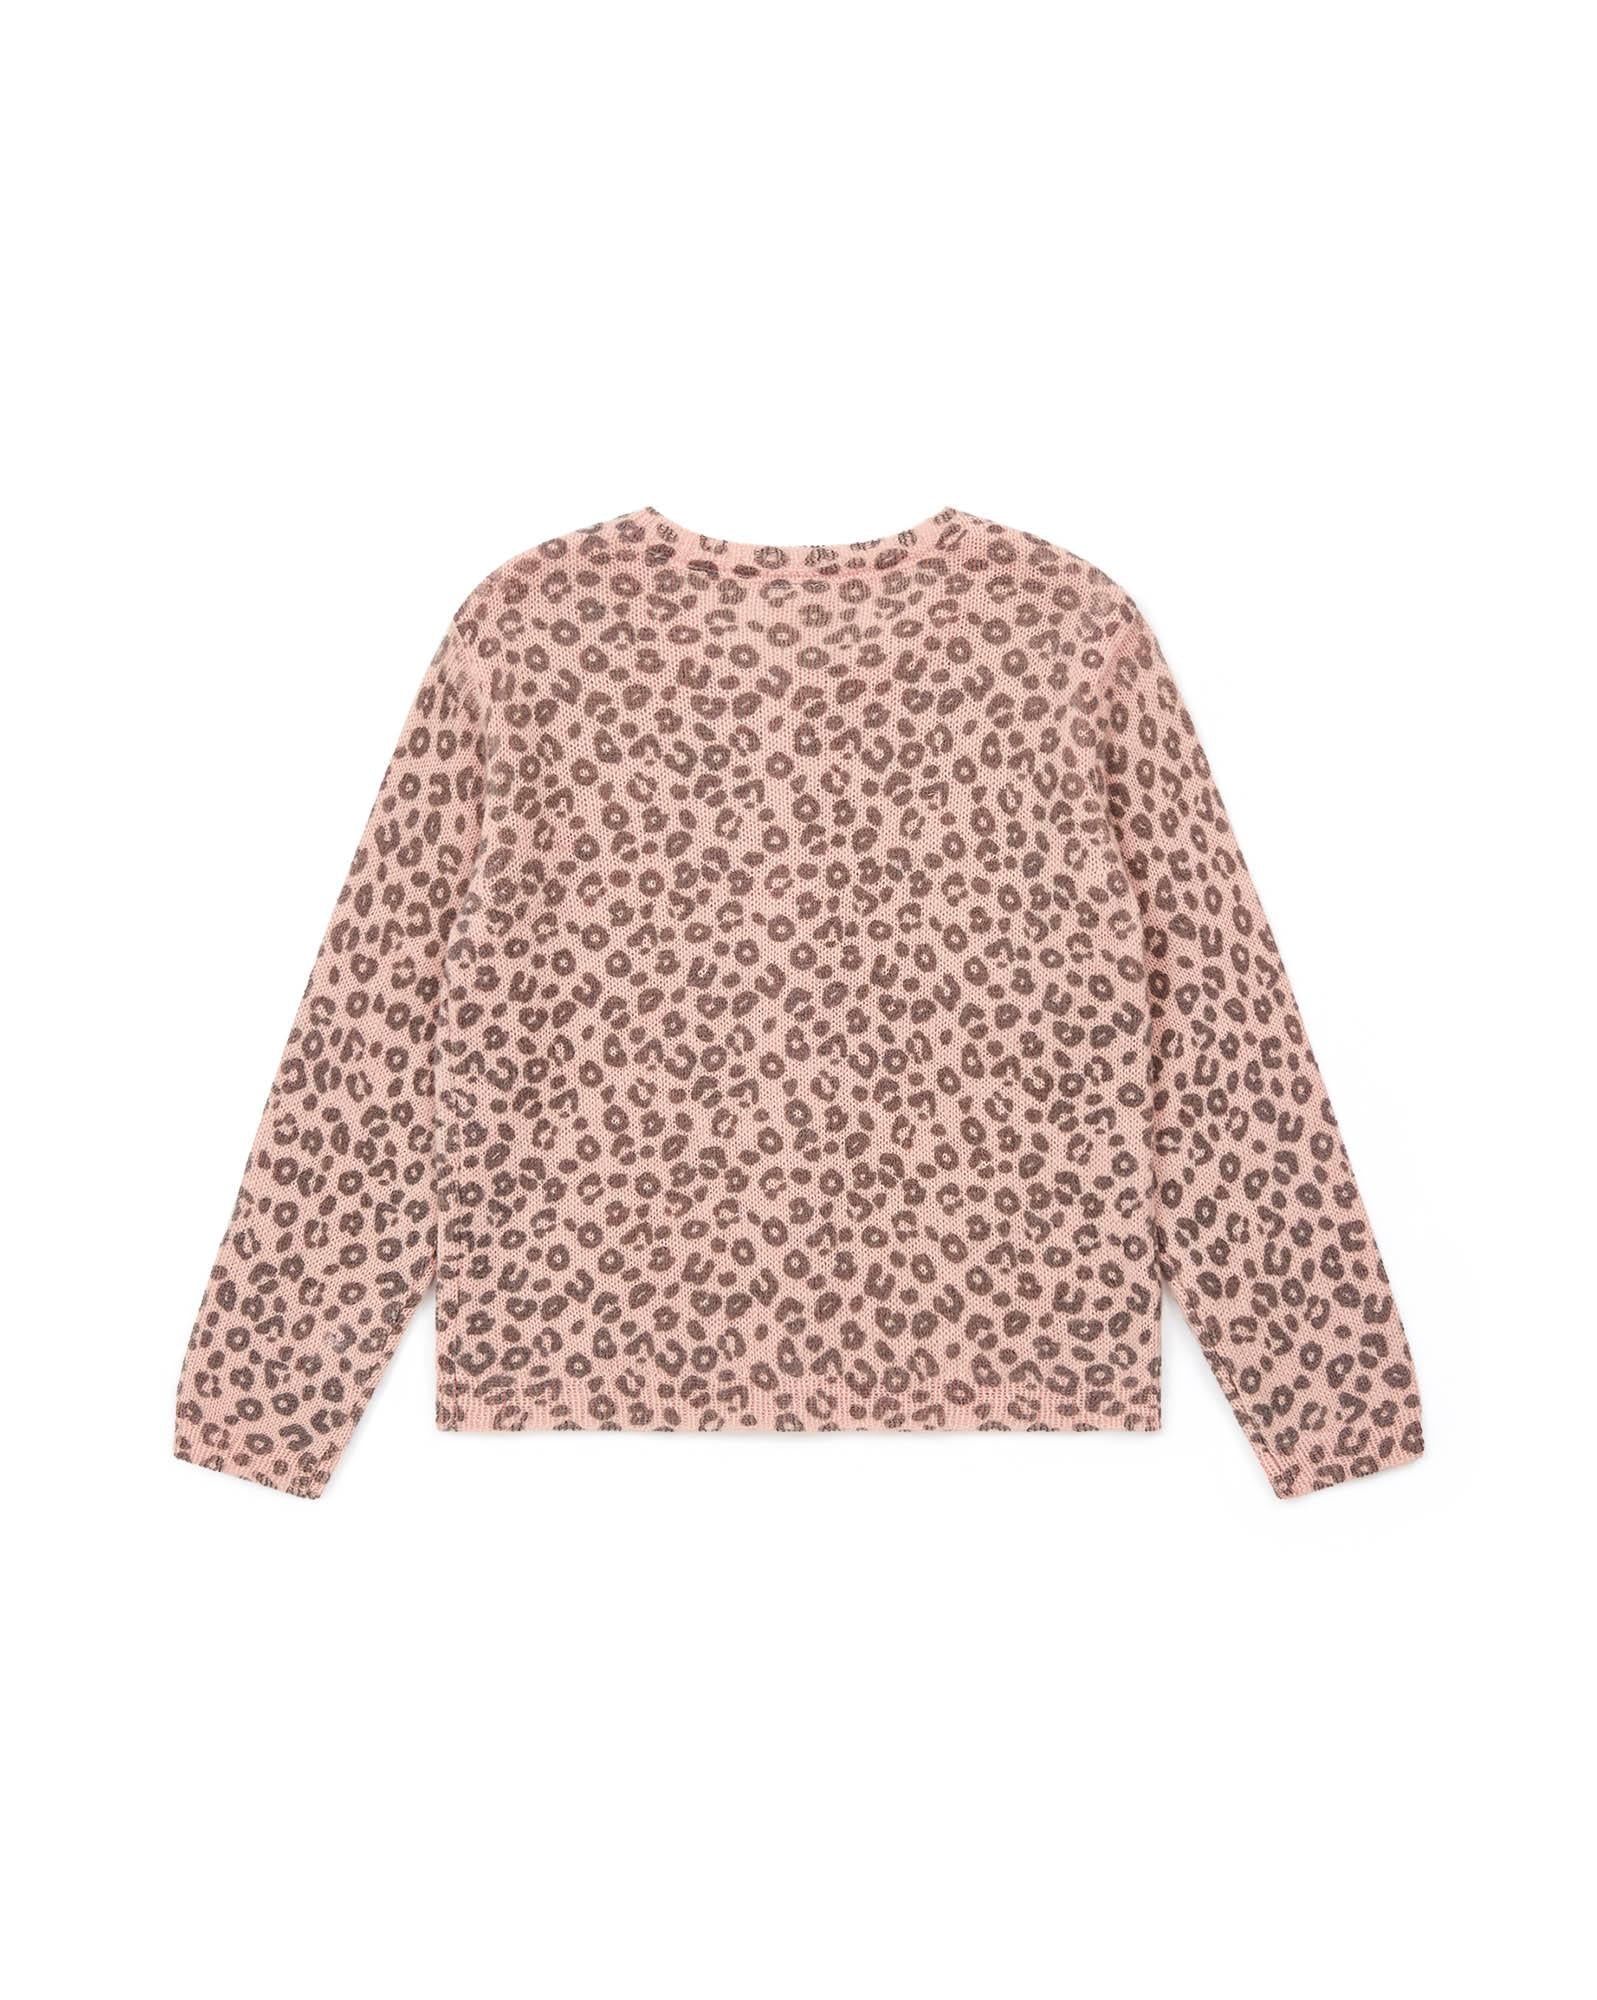 Cardigan rose Fille en tricot imprimé léopard